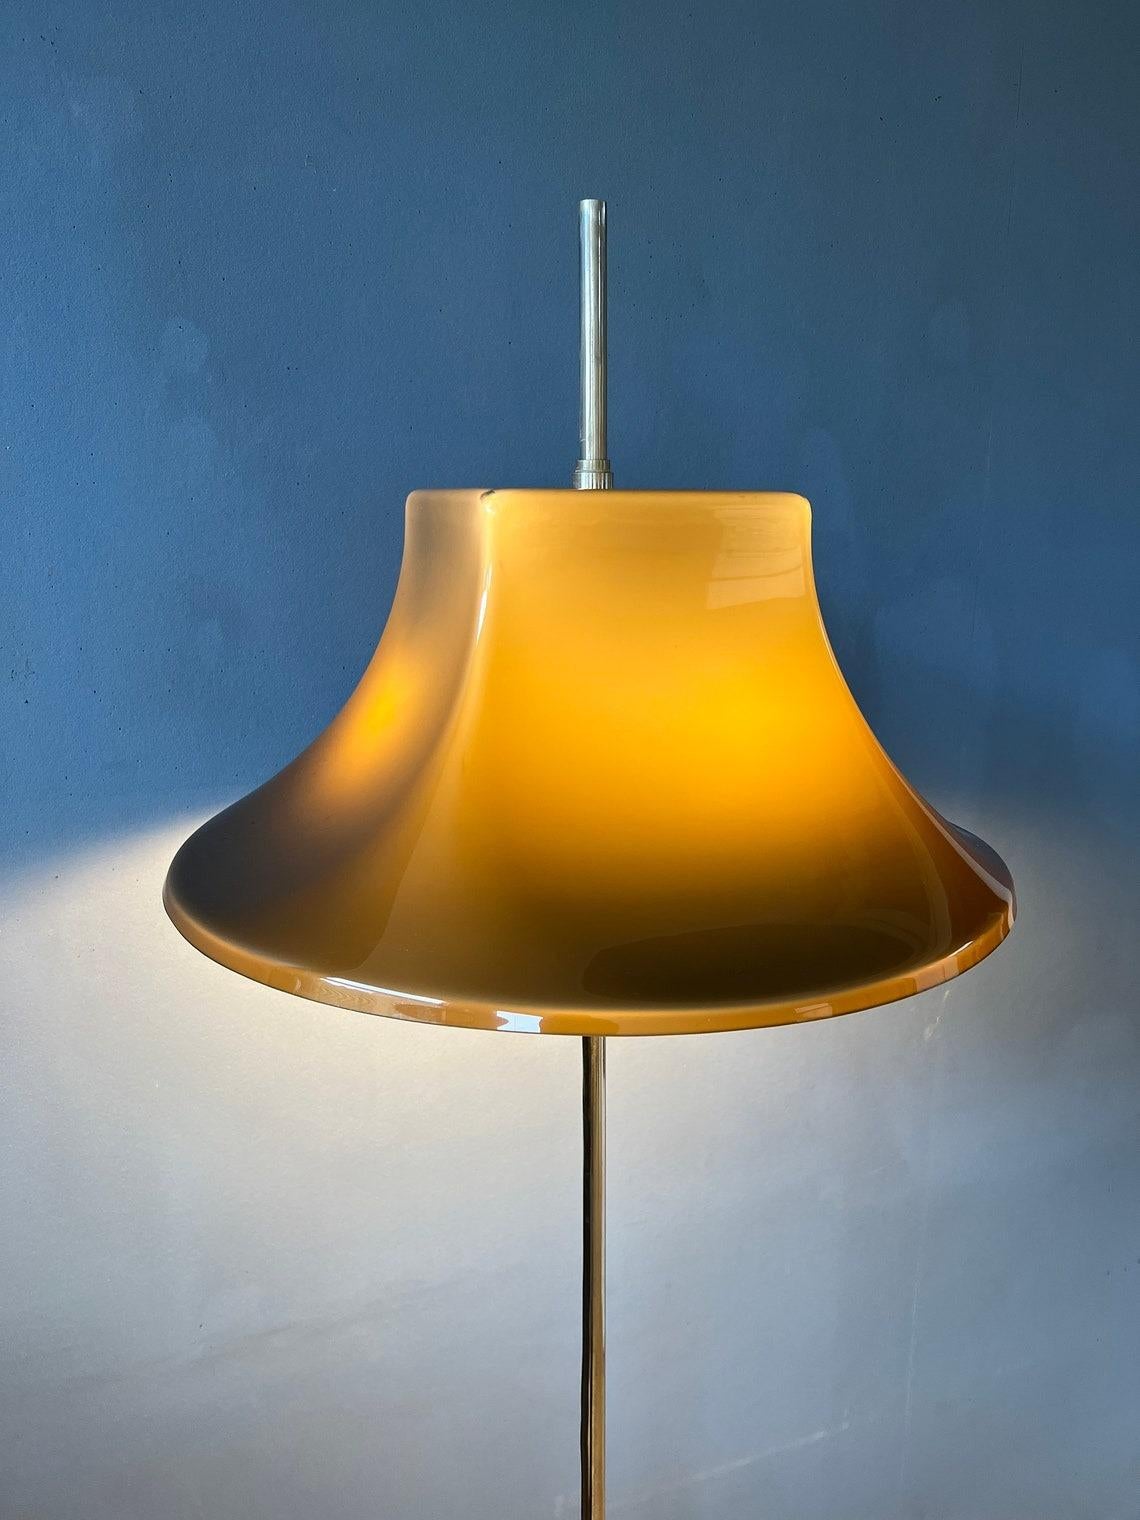 Très rare lampadaire space age de haute qualité par Willem Hagoort avec abat-jour en verre acrylique. L'abat-jour peut être déplacé vers le haut et vers le bas de la base (lourde). La lampe nécessite deux ampoules E27 et dispose actuellement d'une